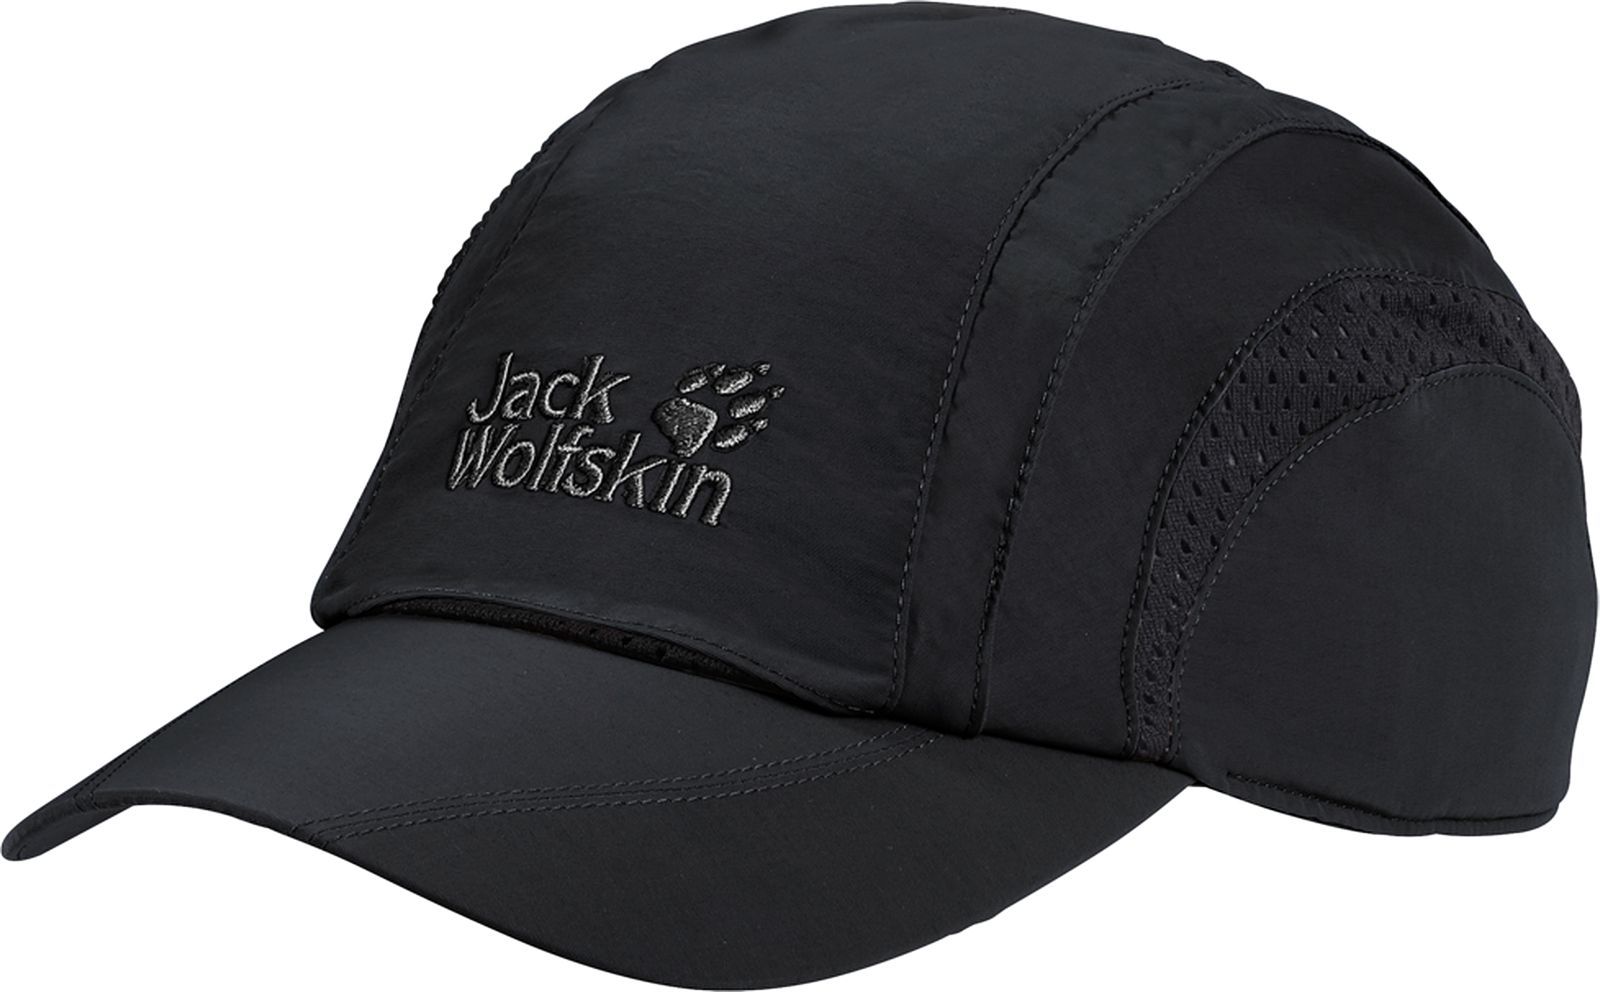   Jack Wolfskin Vent Pro Cap, : . 19222-6000.  M (54-57)